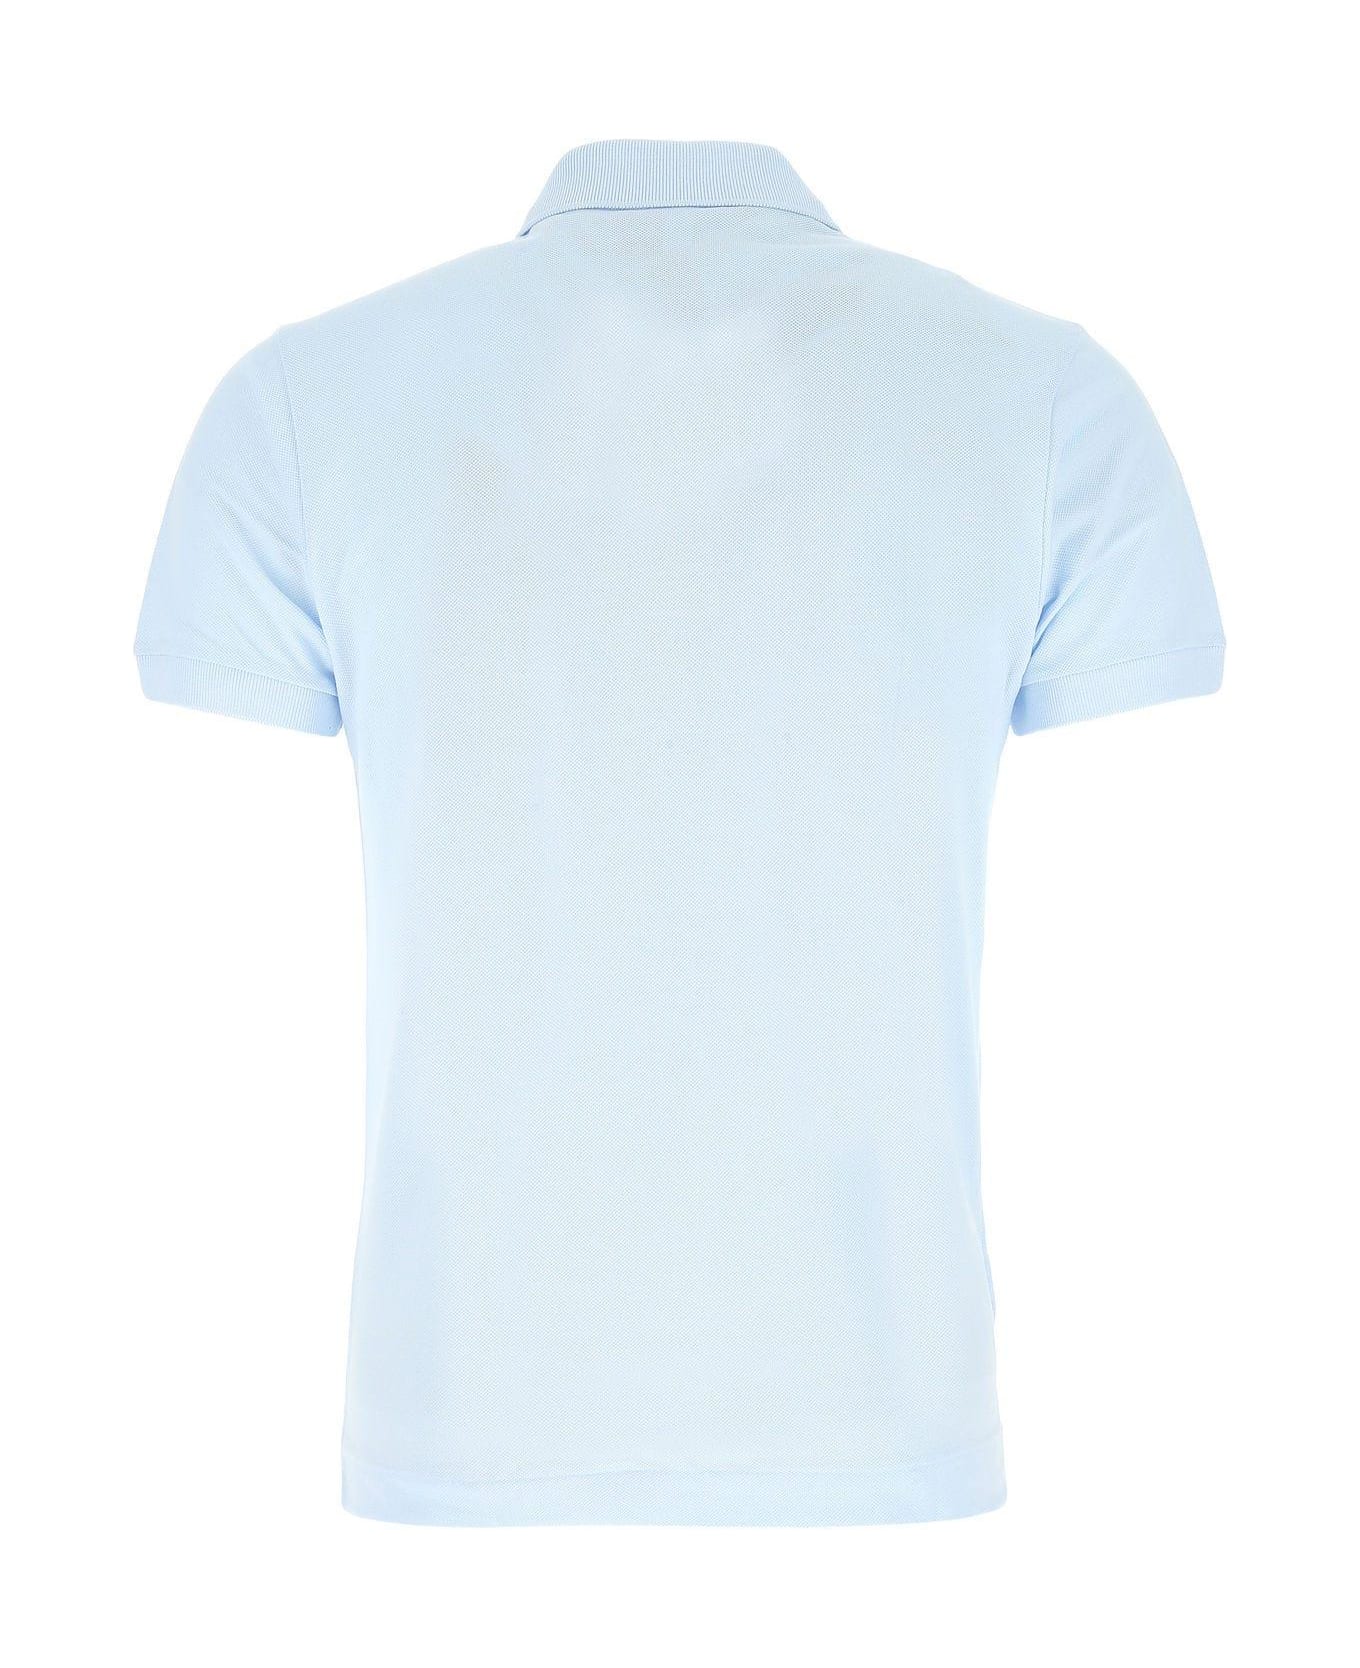 Lacoste Pastel Light-blue Piquet Polo Shirt Lacoste - LIGHT BLUE